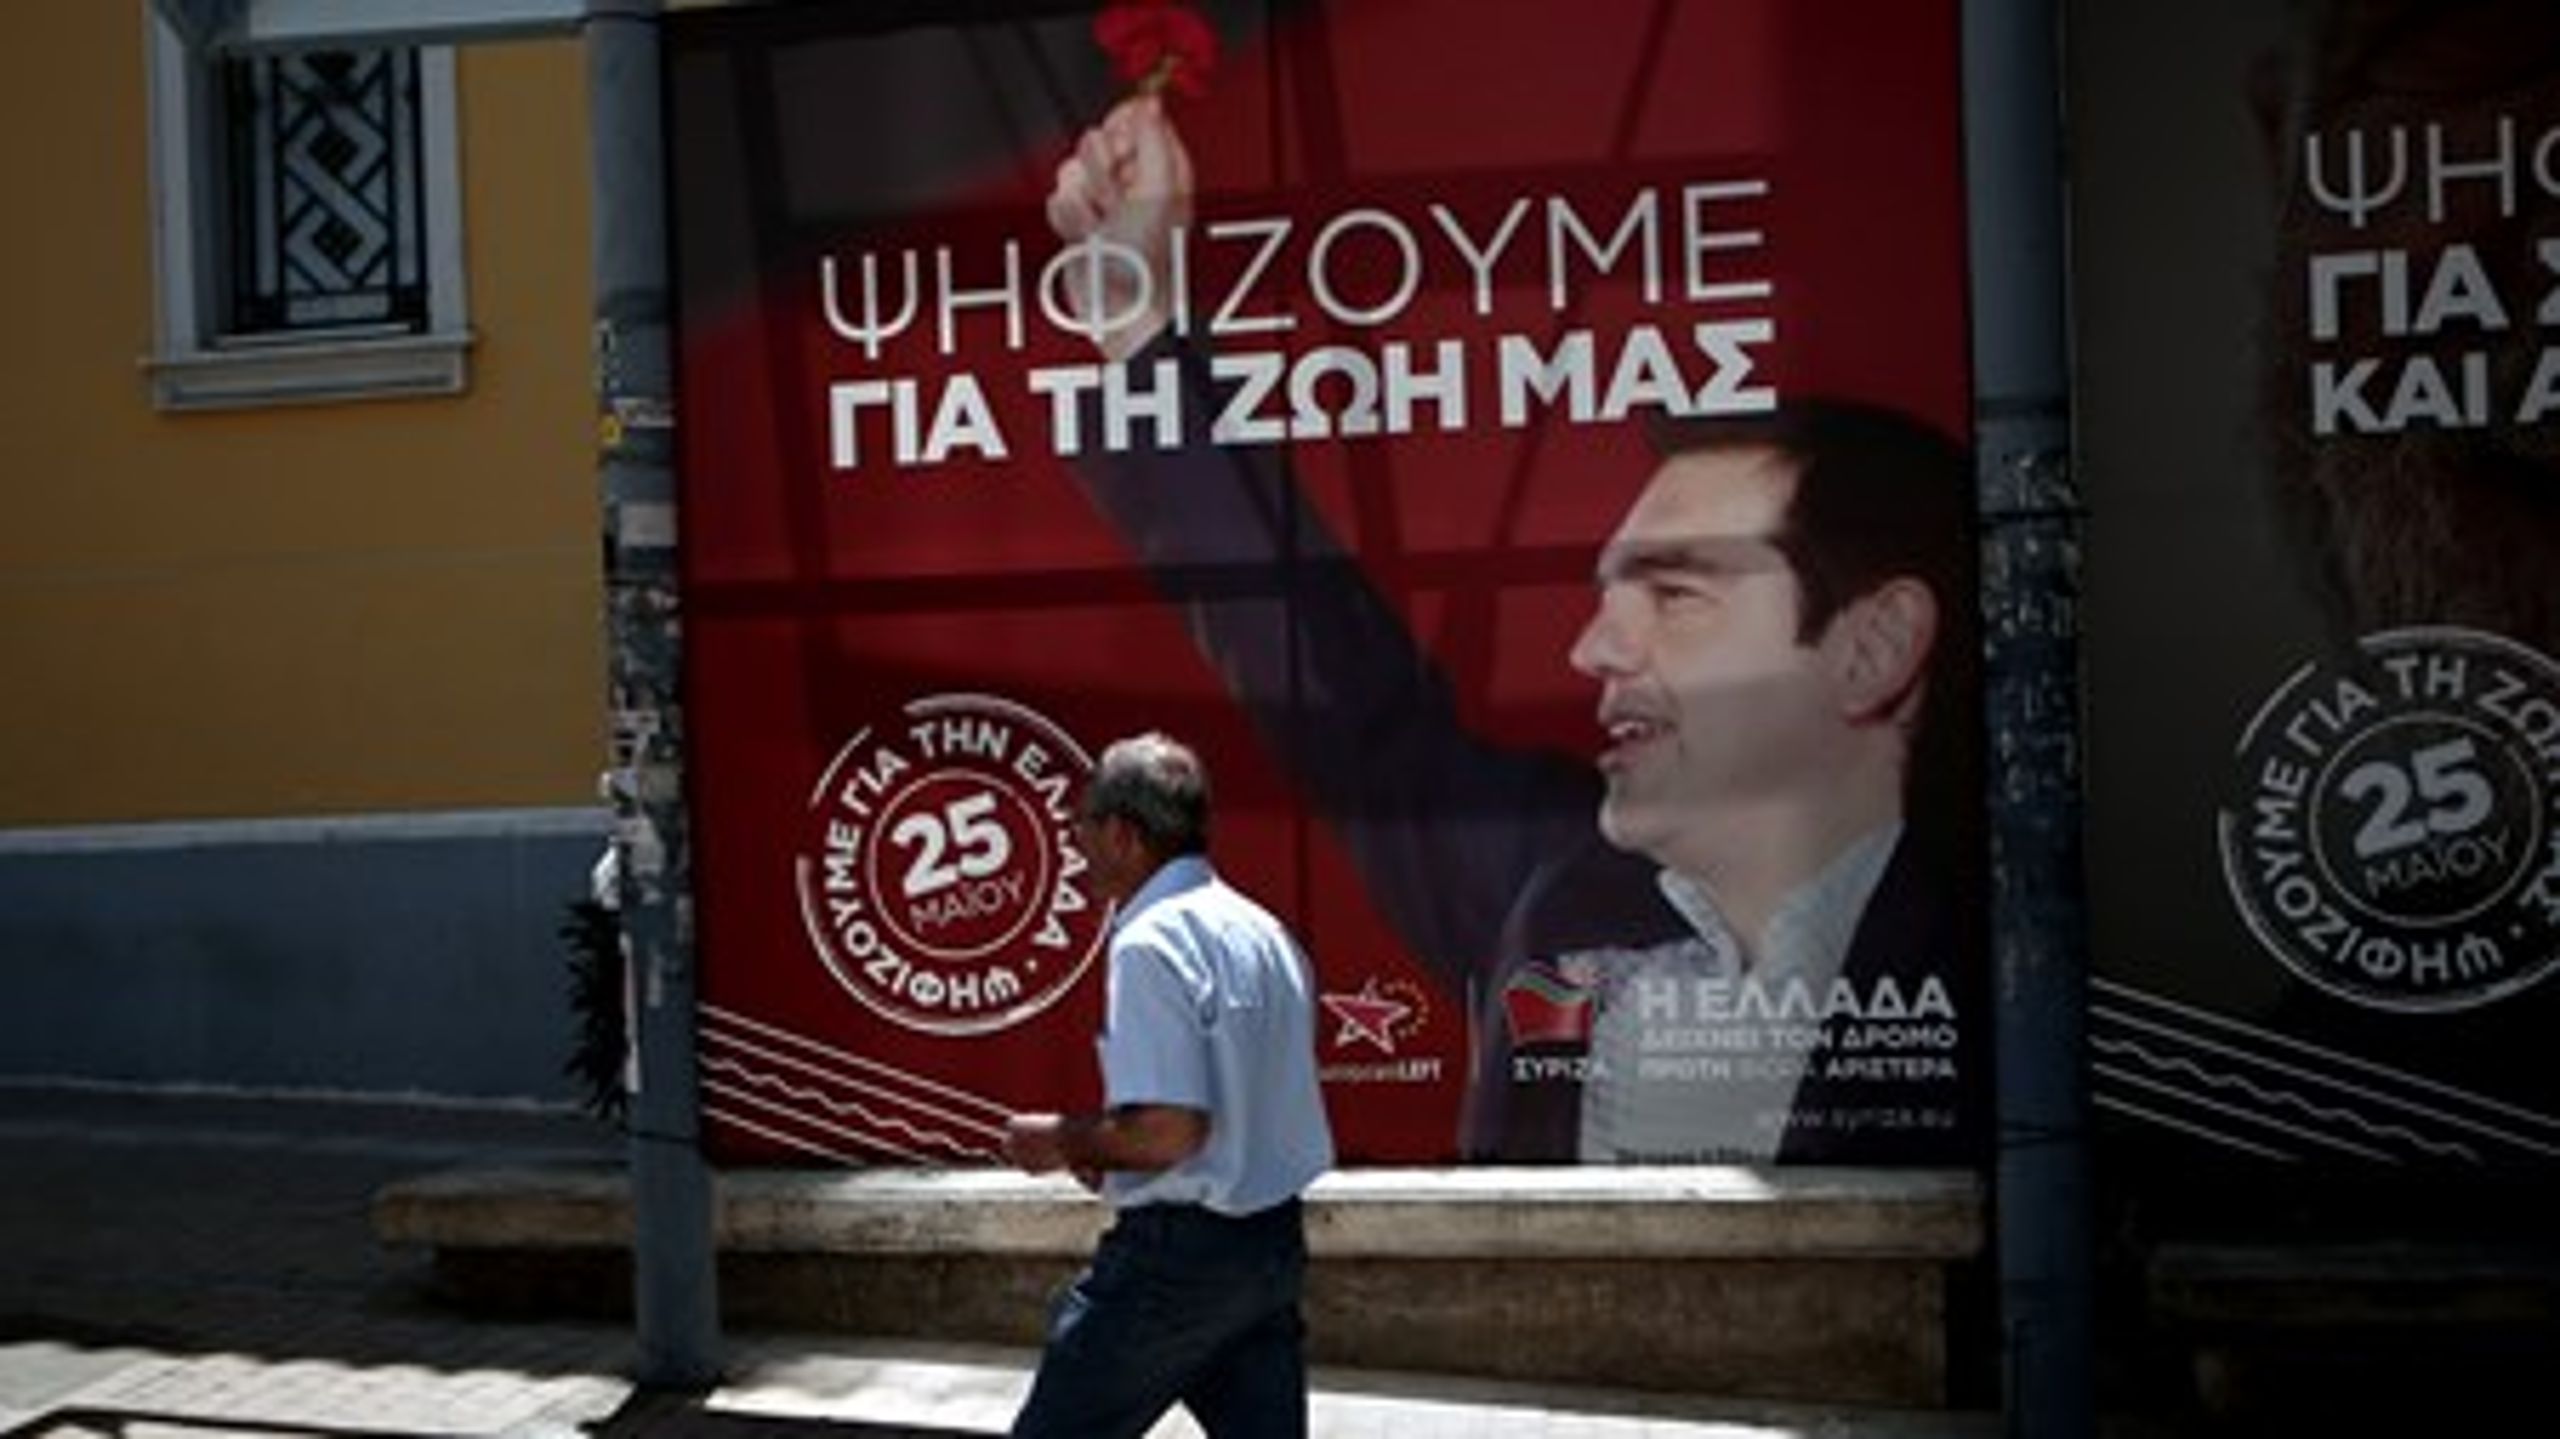 SYRIZA's Alexis Tspiras var det græske valgs helt store vinder. Her på en plakat fra sidste års valg til Europa-Parlamentet, hvor de fik deres første store valgsejr.